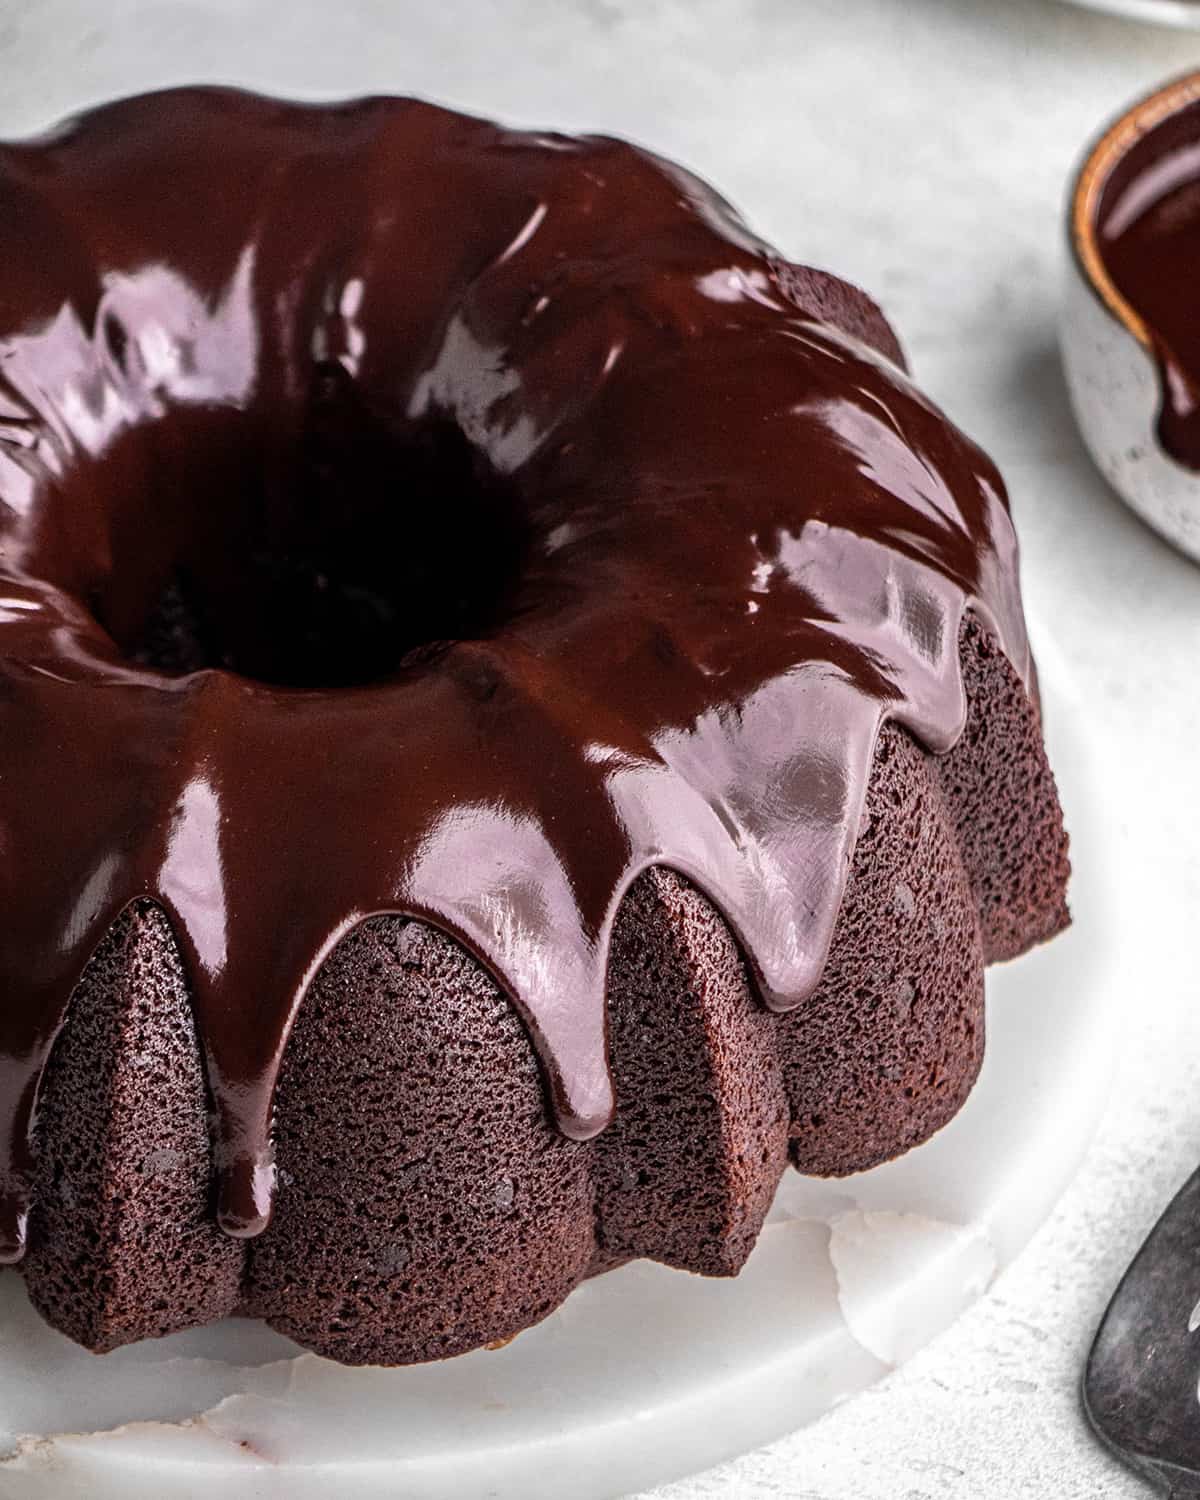 Chocolate Bundt Cake with a chocolate glaze on a cake plate 